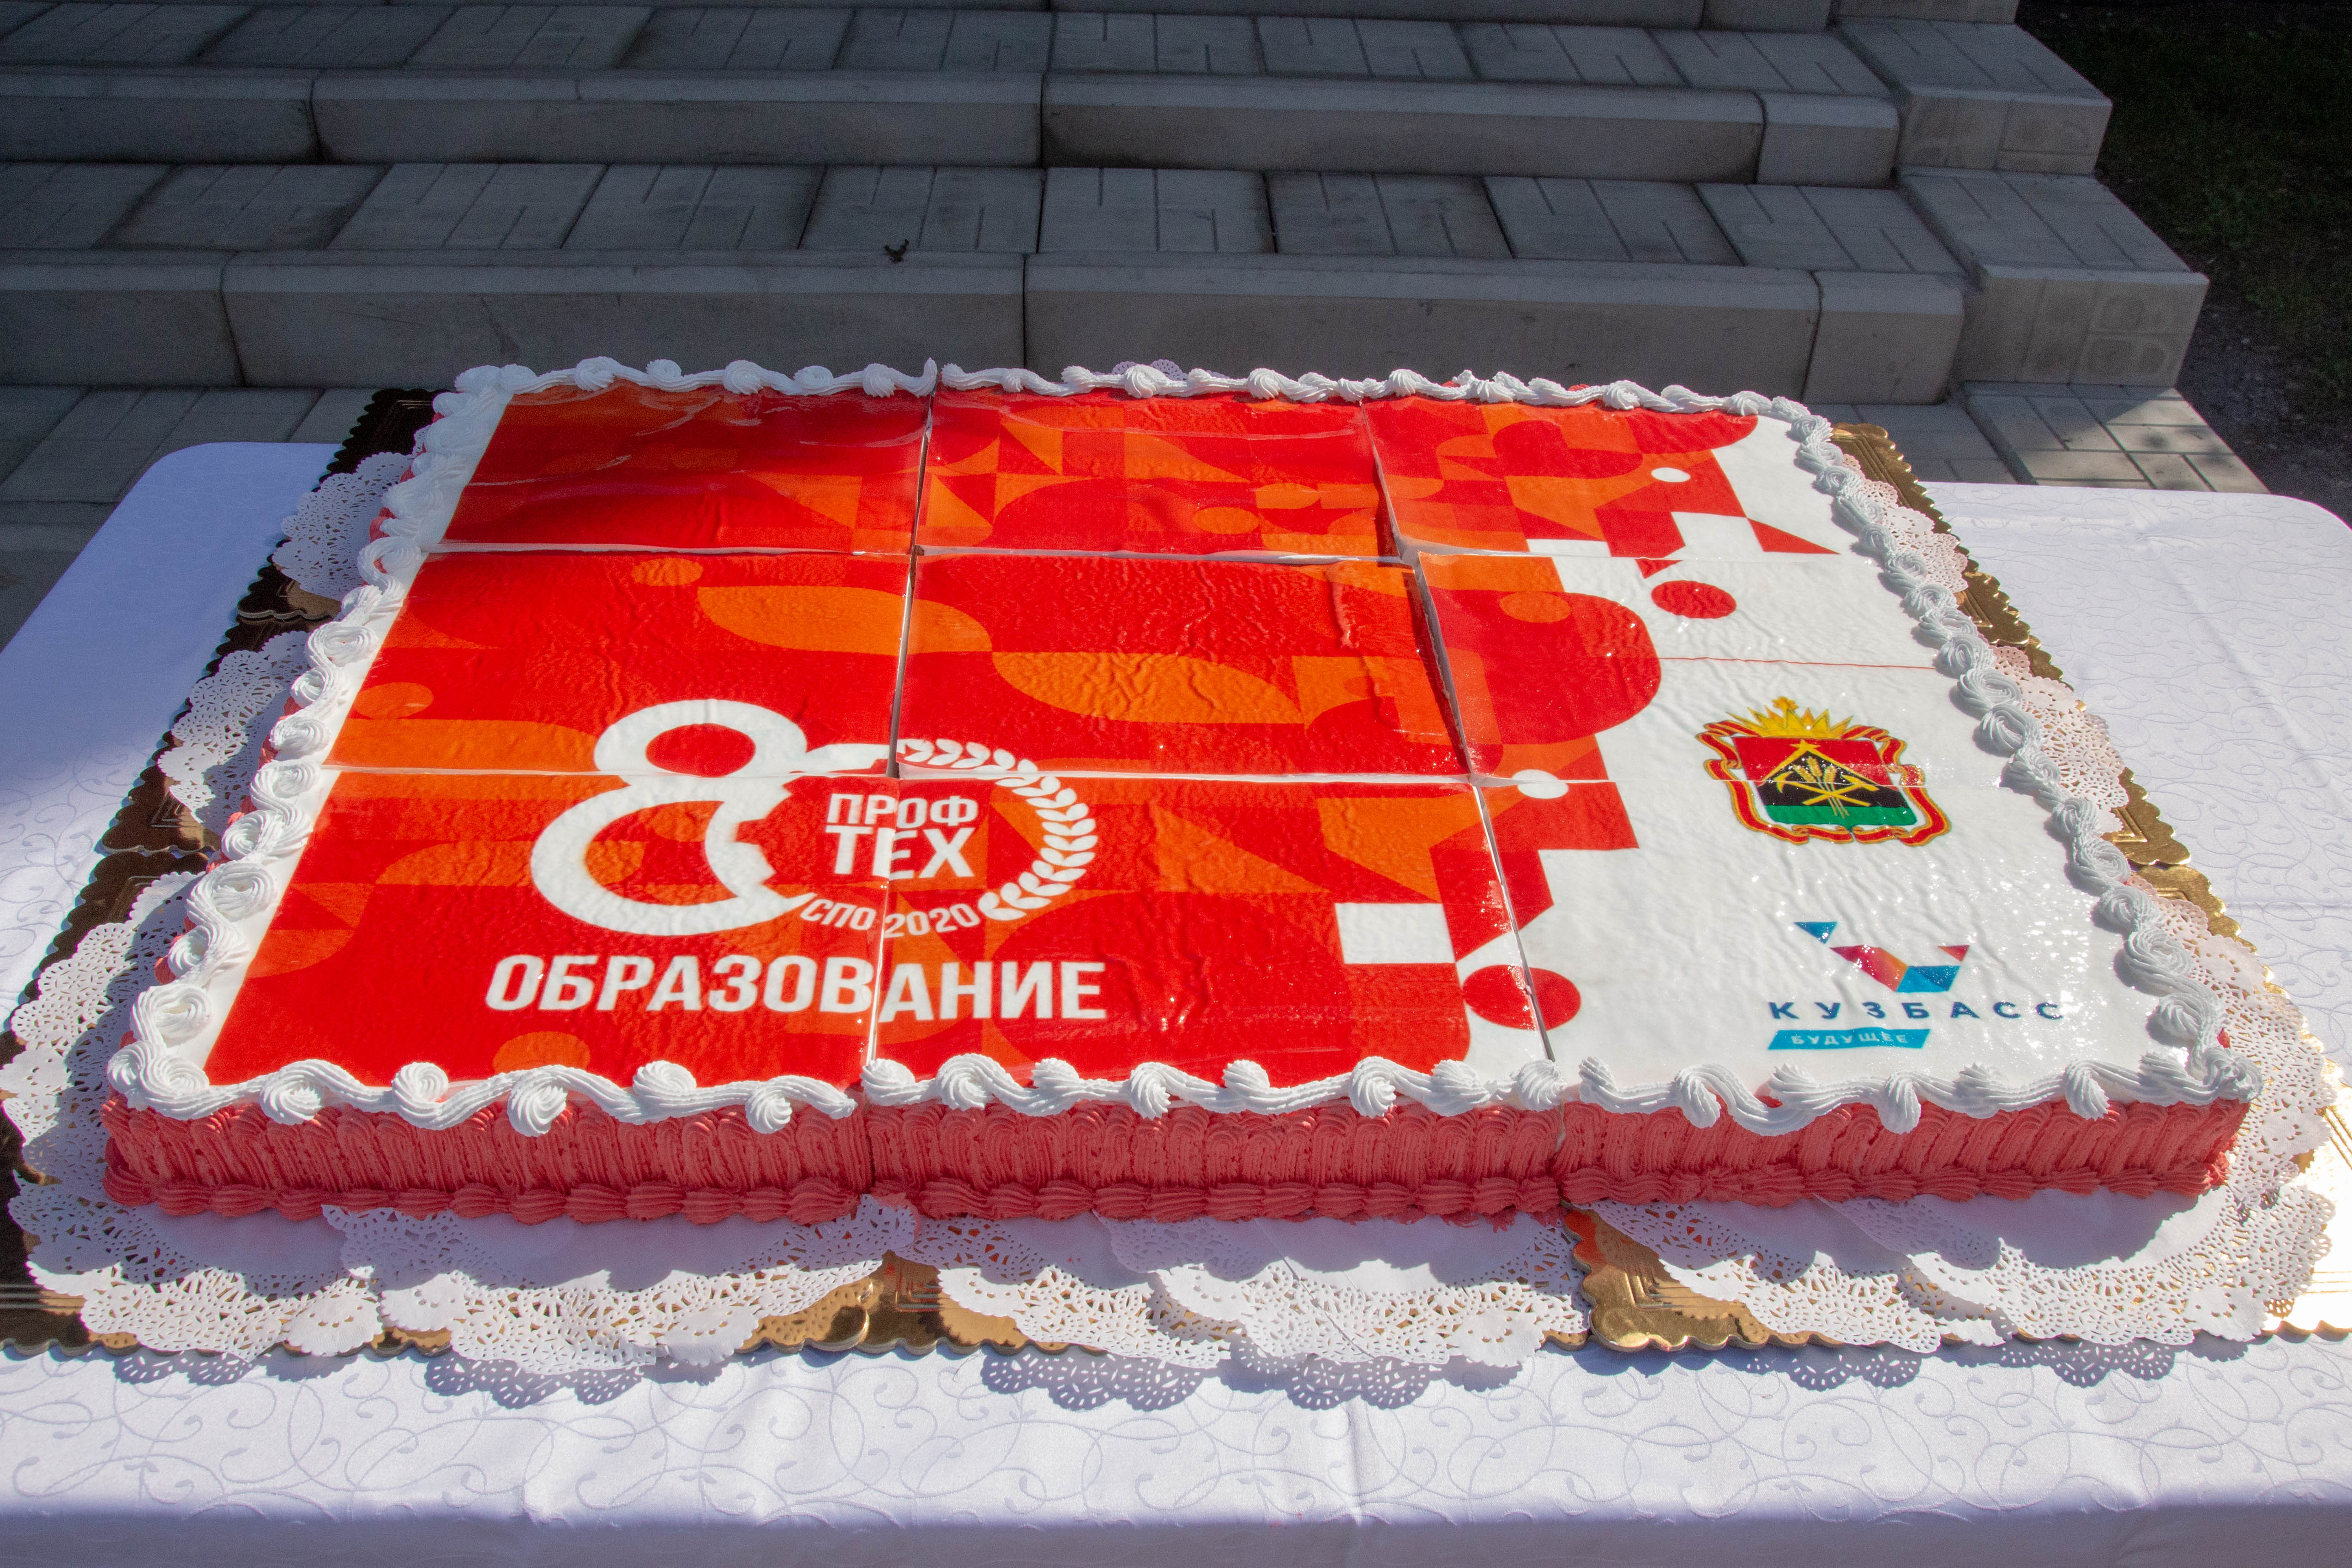 Кузбасские студенты заложили аллею памяти и испекли торт в рамках празднования 80-летия профтехобразования